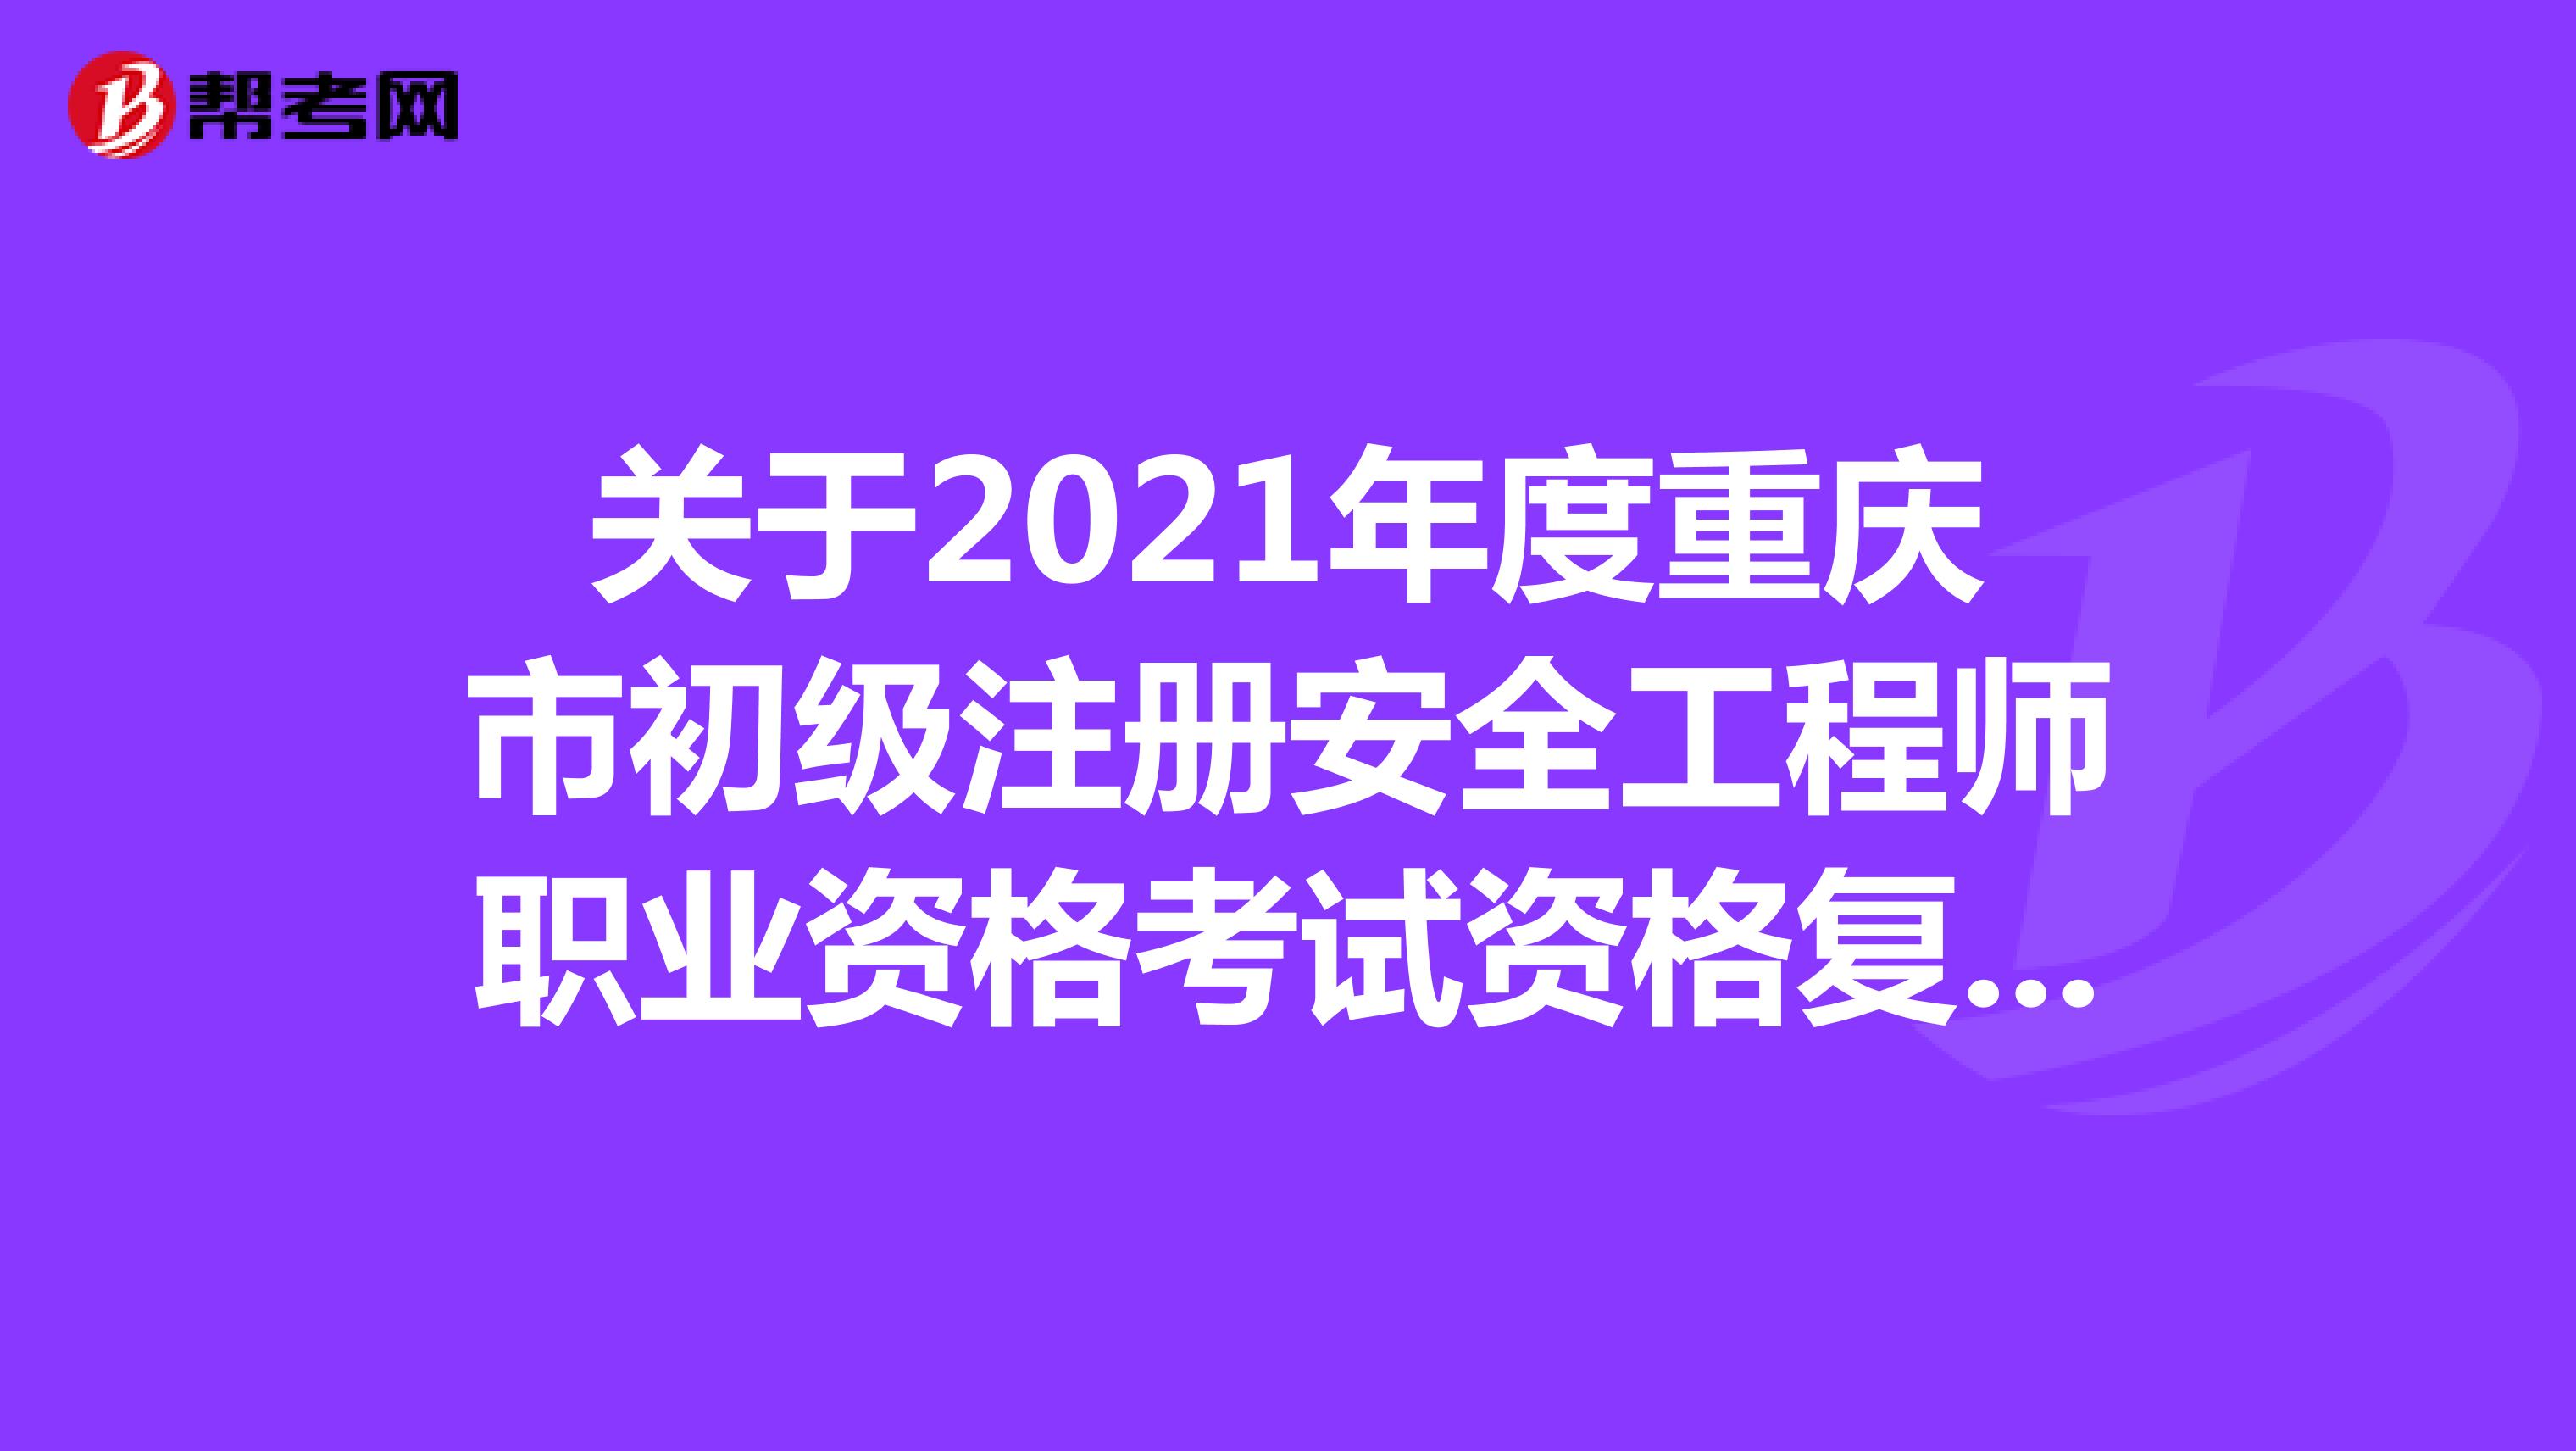 关于2021年度重庆市初级注册安全工程师职业资格考试资格复核结果